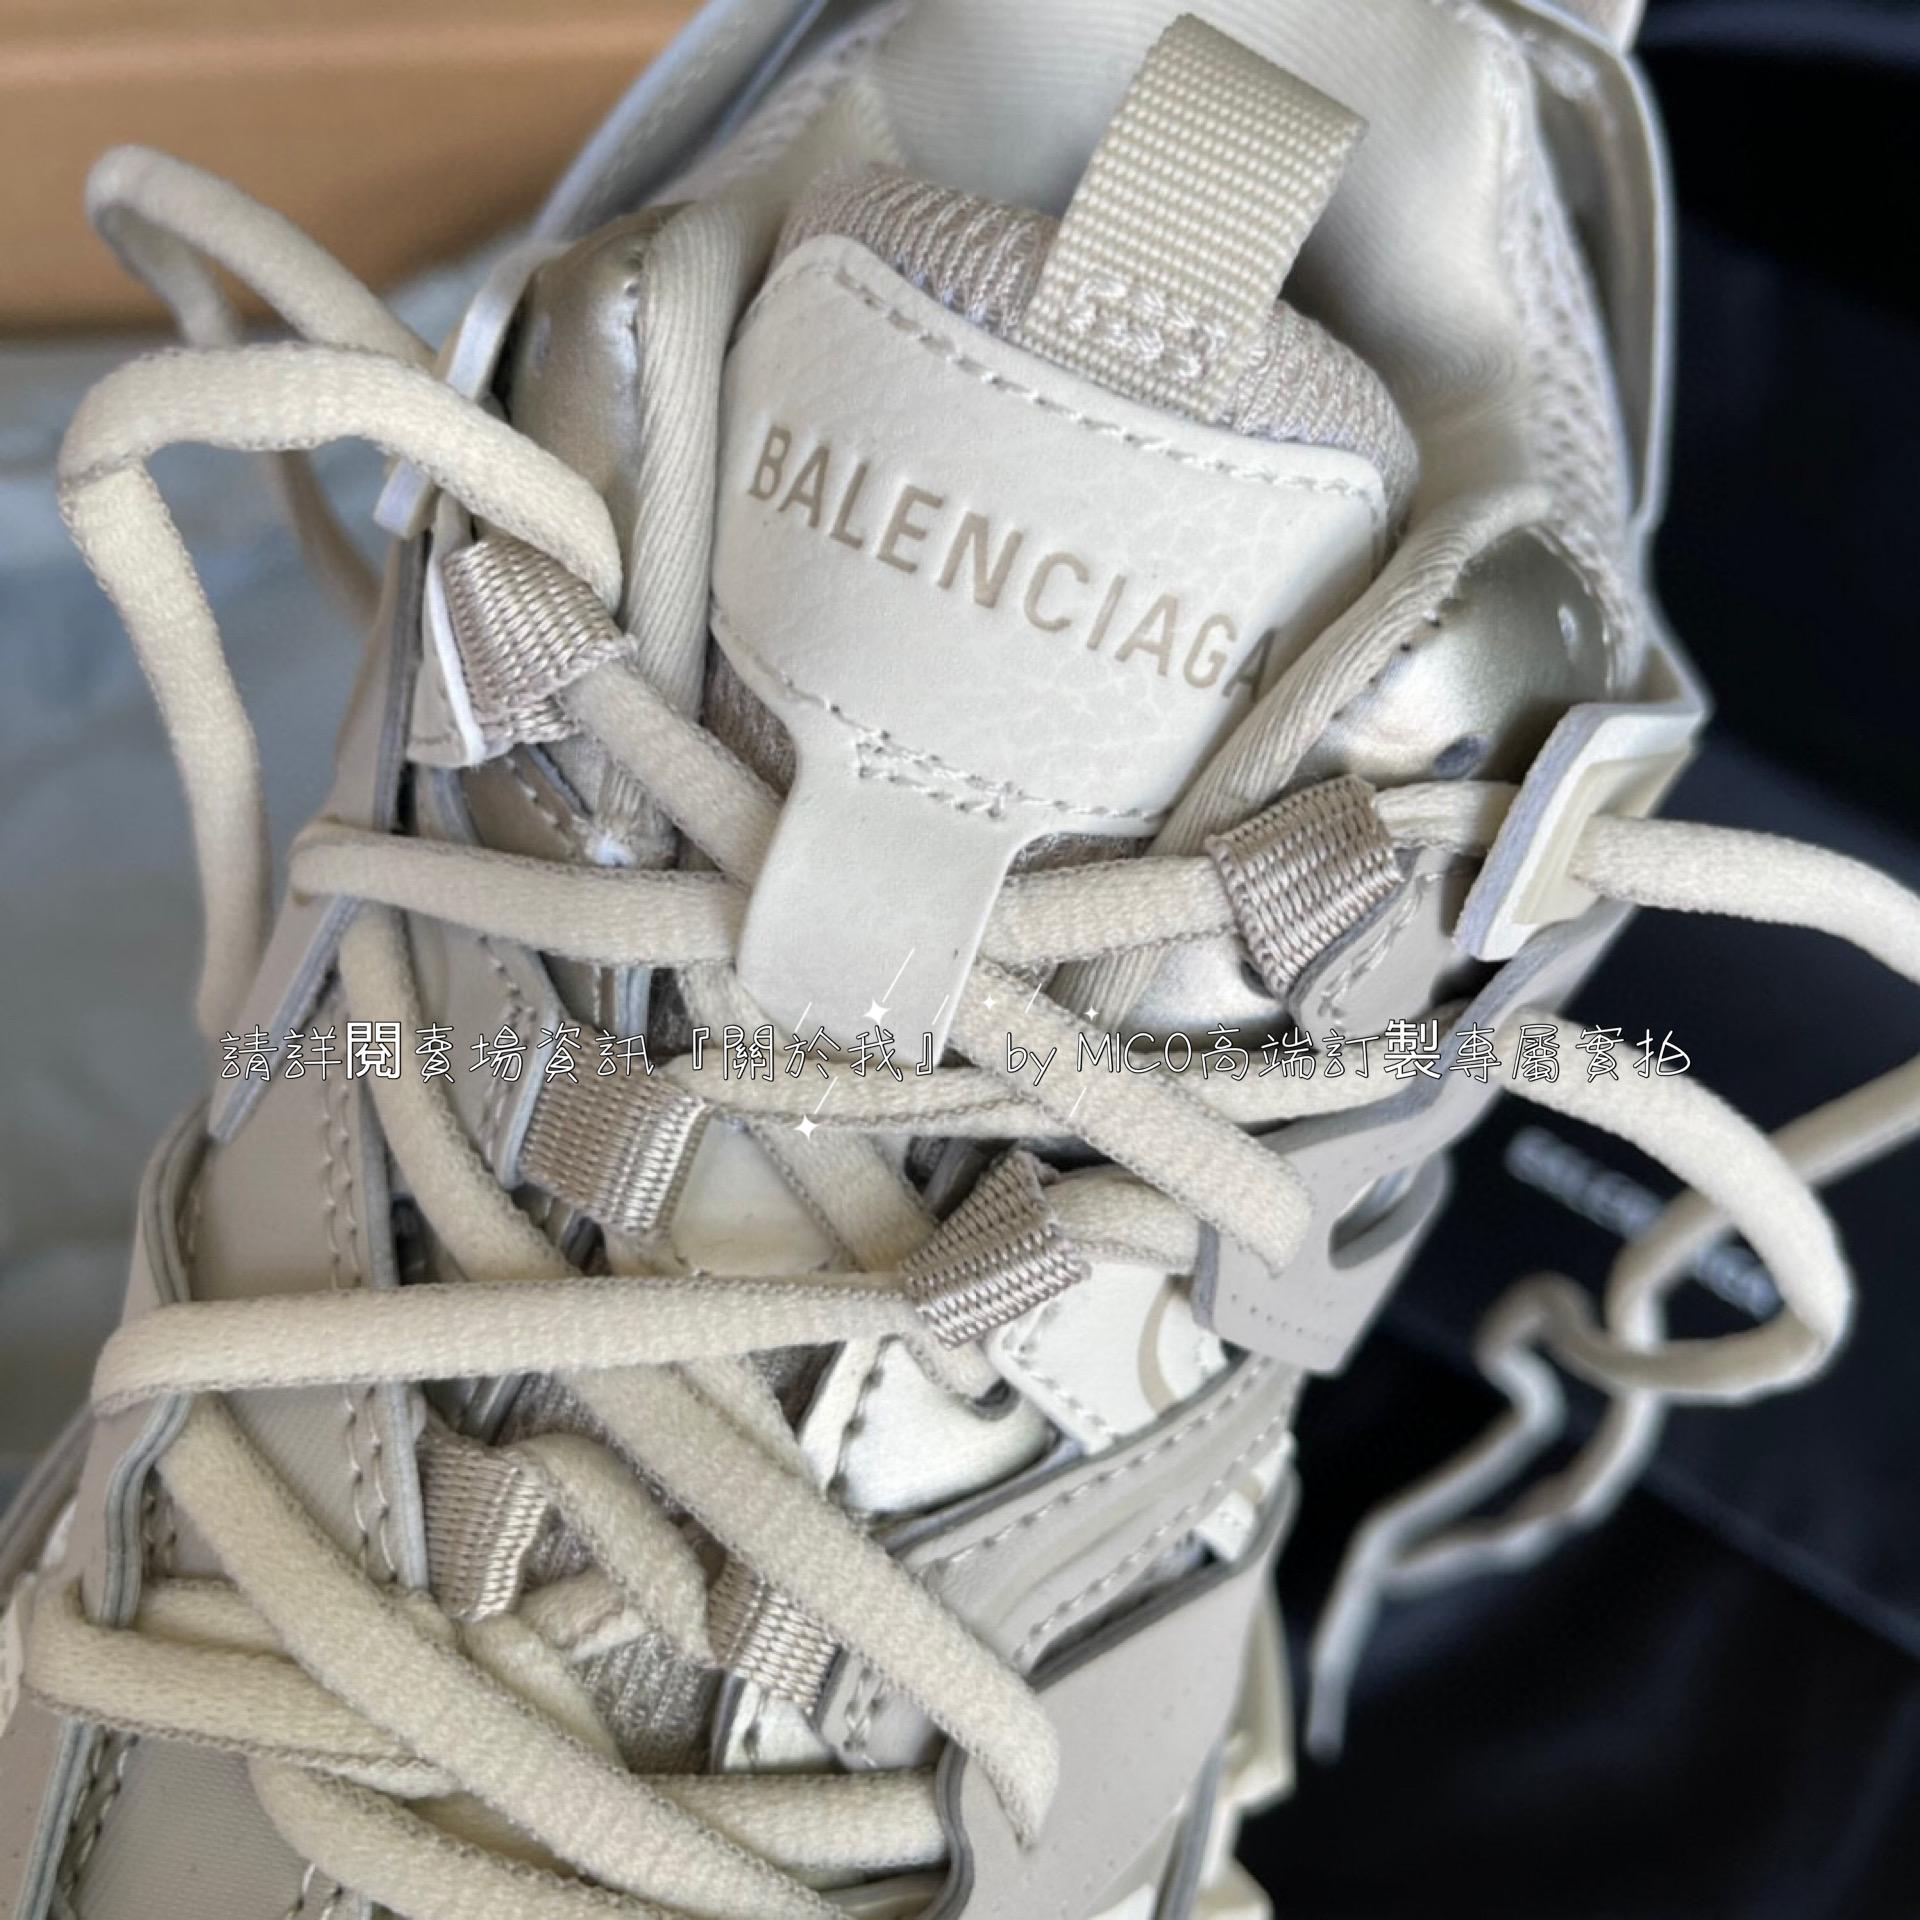 巴黎世家3.0 三代戶外概念鞋 Balenciaga Sneaker Tess.s.Gomma 奶灰色 男女鞋 35-46